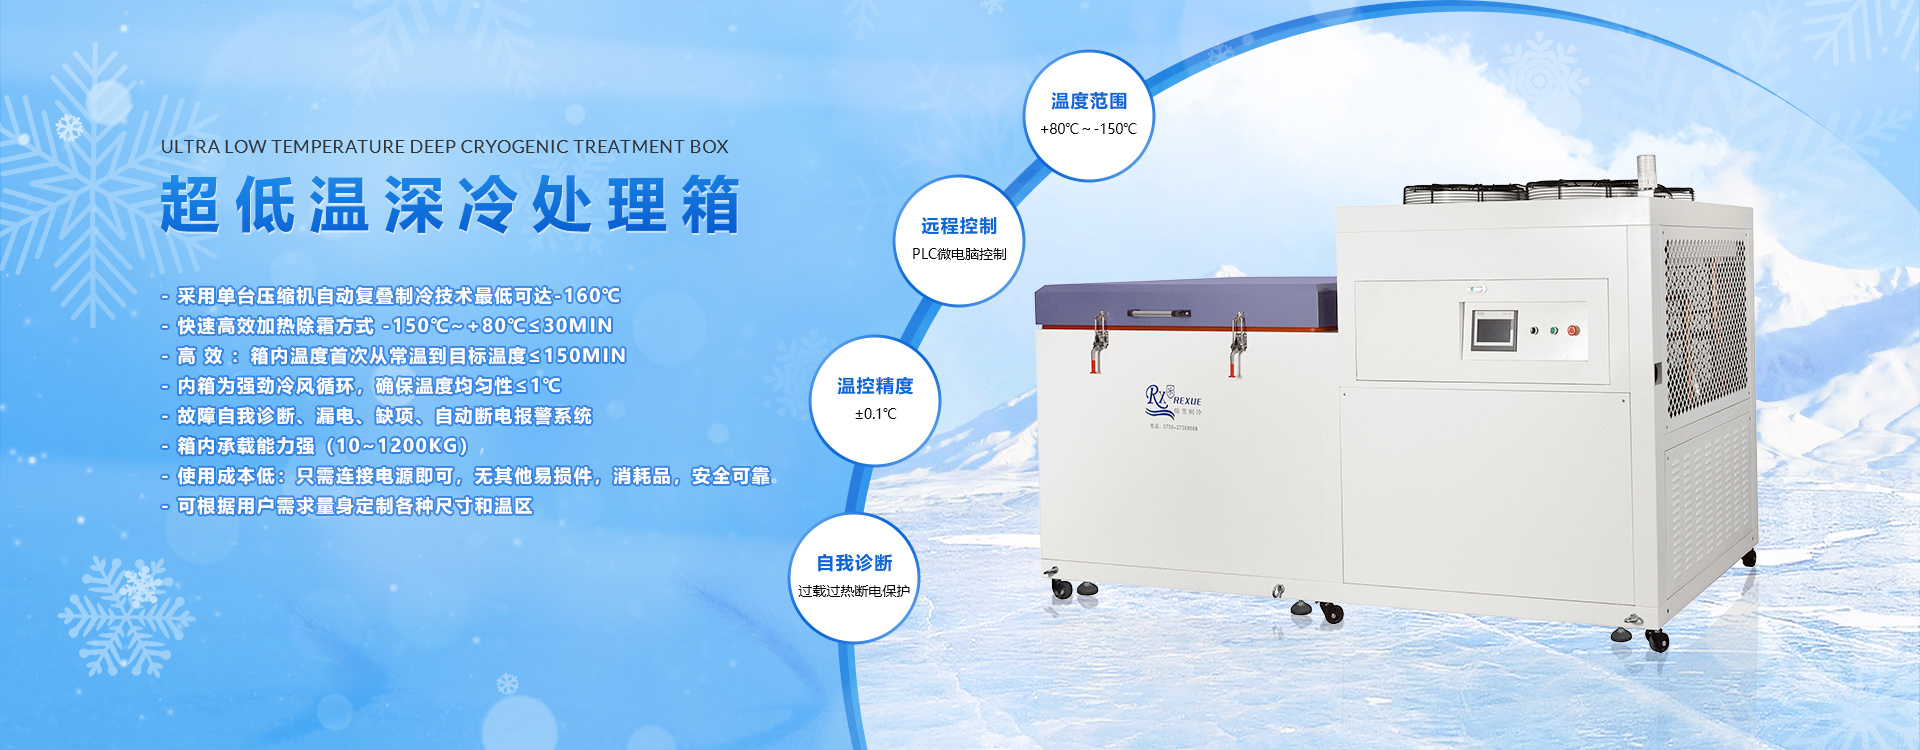 超低溫液晶屏冰箱-模具冷處理箱廠家-復疊式冷凍機供應廠-低溫水汽捕集器直供-軸承冷縮裝配低溫箱